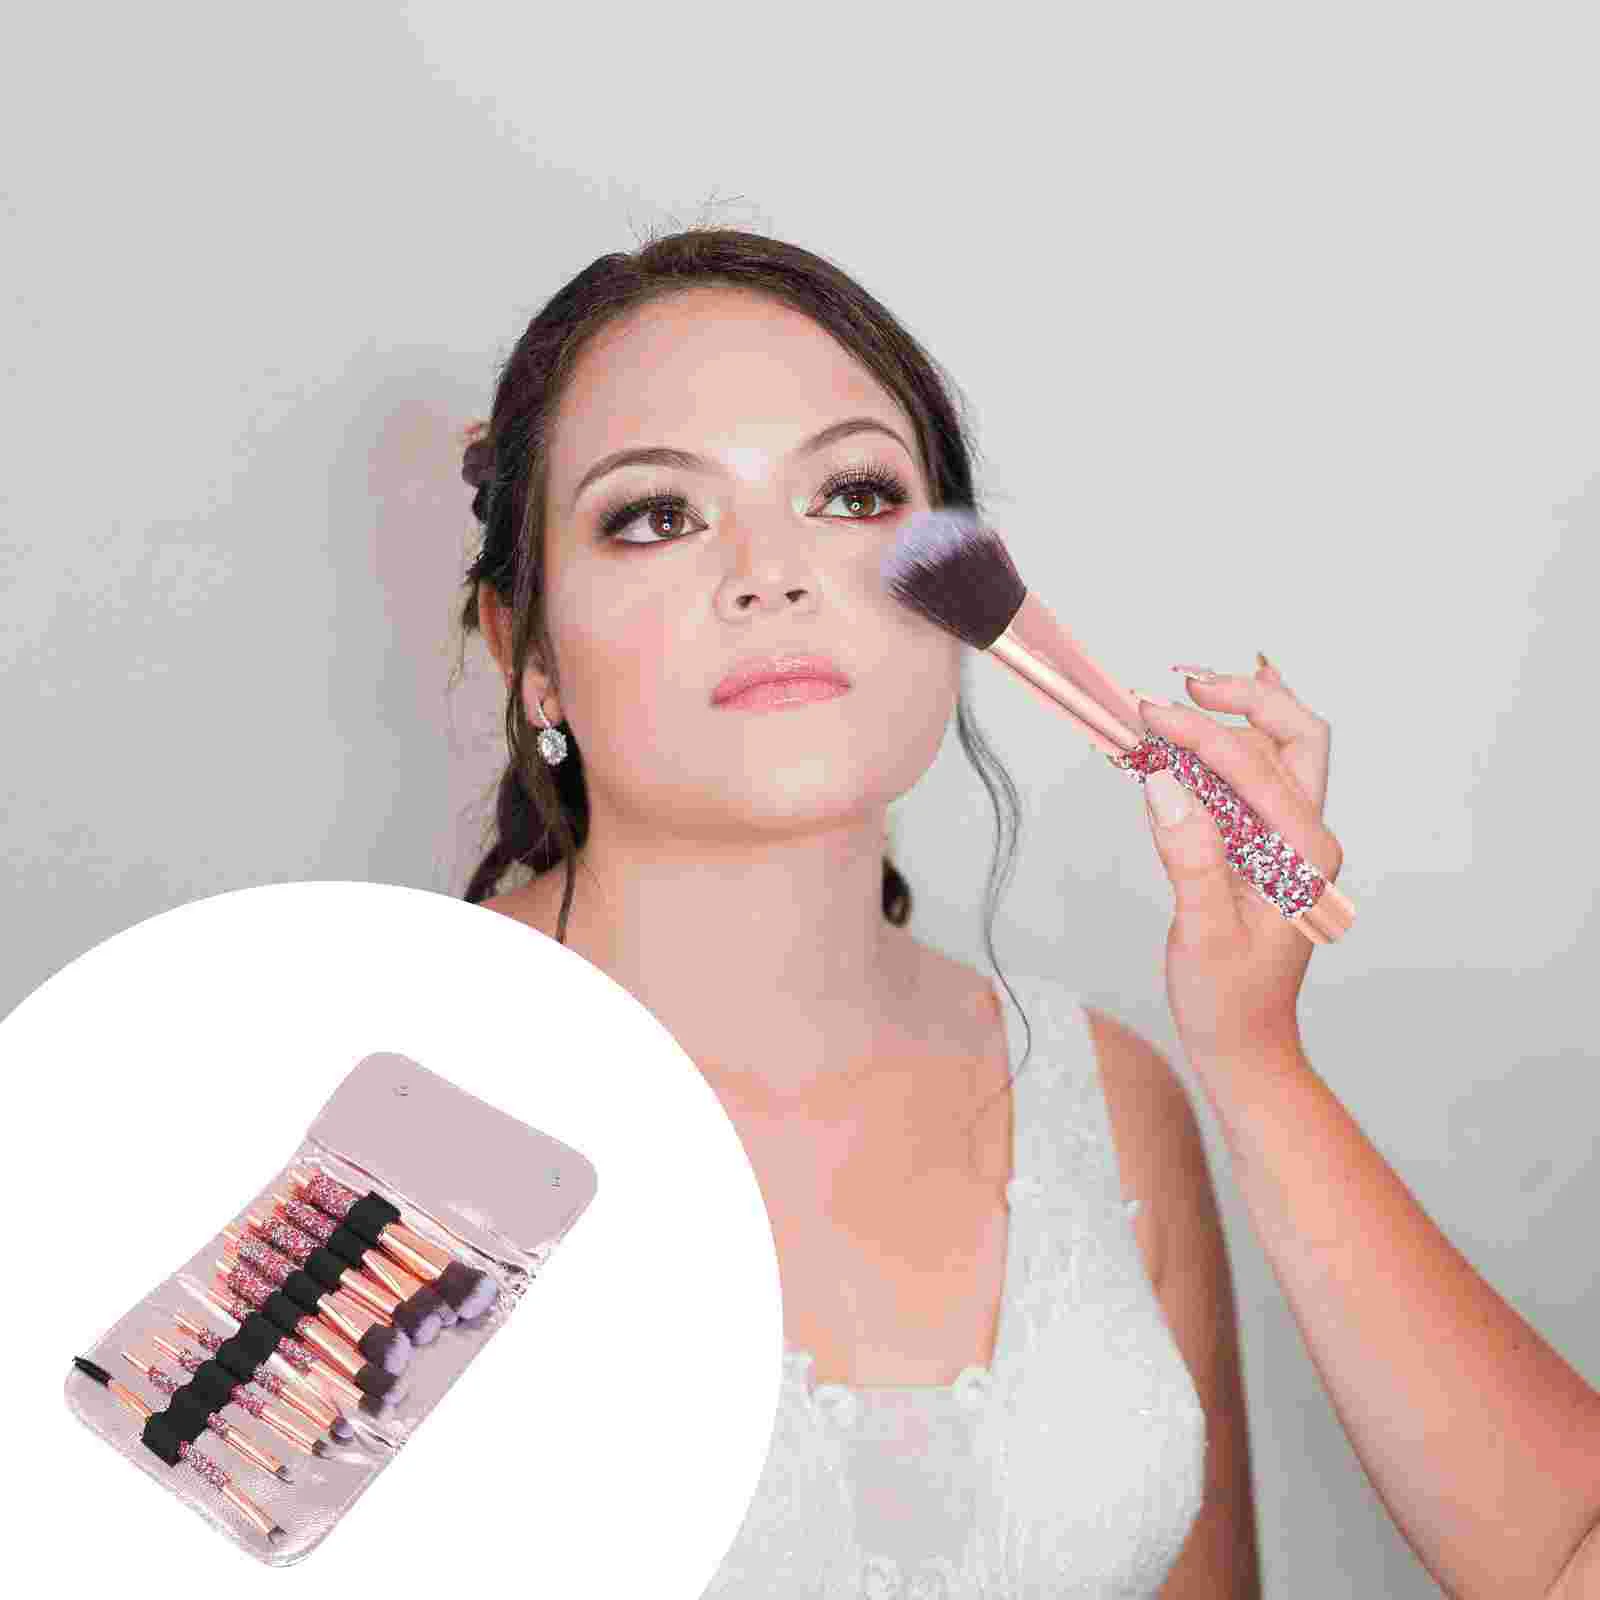 

Brush Makeup Brushespowder Face Set Blush Concealer Handheld Eyeshadow Kabuki Blending Foundation Portable Kit Supplies Loose